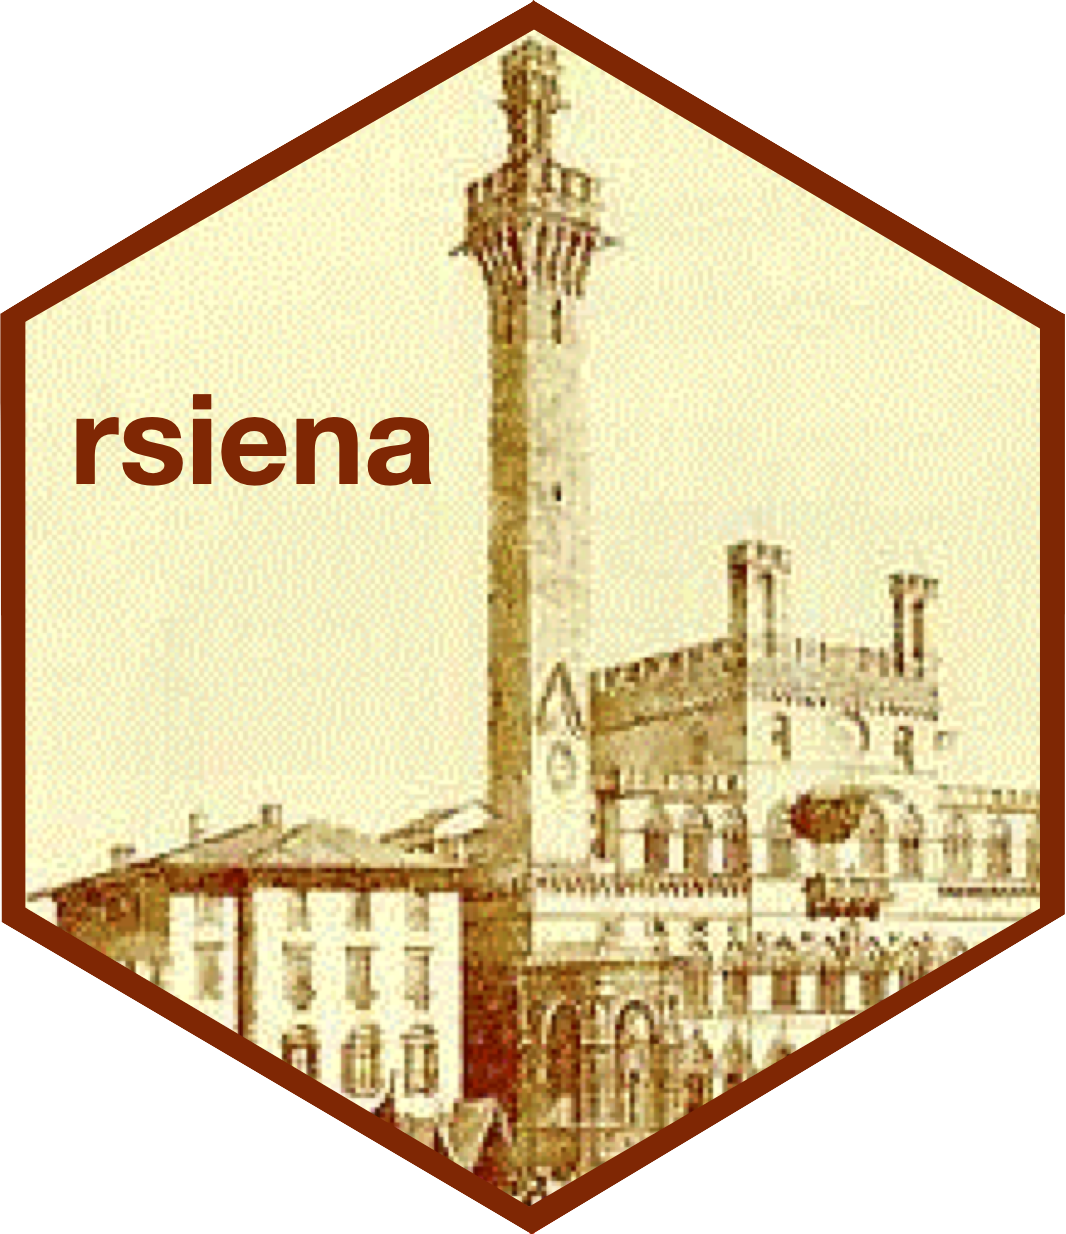 rsiena hex sticker